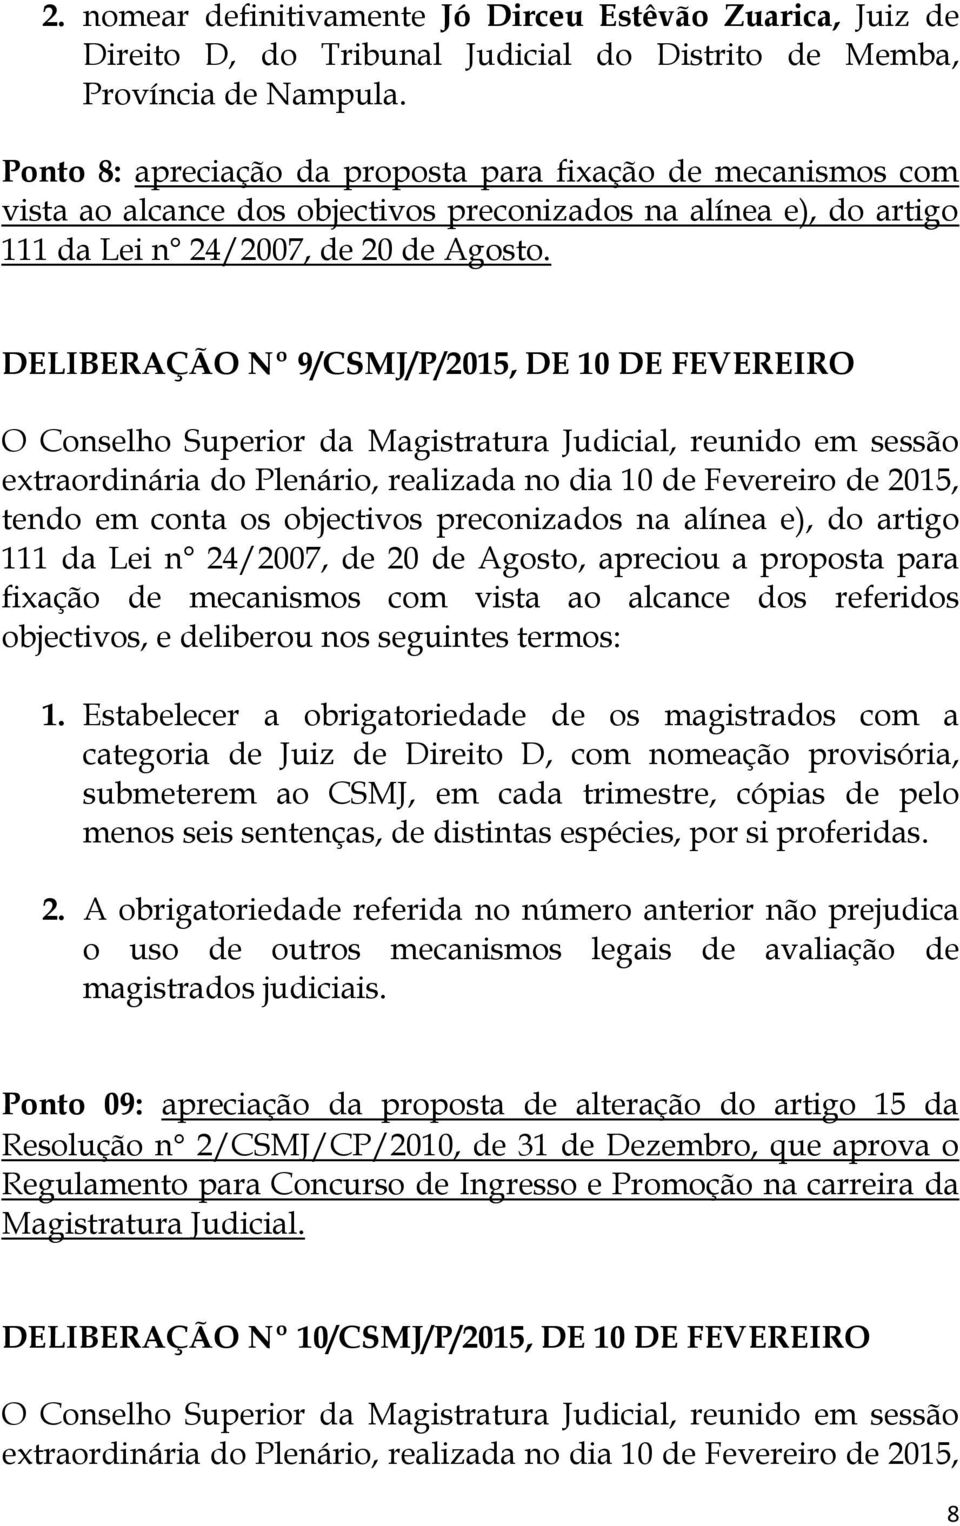 DELIBERAÇÃO Nº 9/CSMJ/P/2015, DE 10 DE FEVEREIRO tendo em conta os objectivos preconizados na alínea e), do artigo 111 da Lei n 24/2007, de 20 de Agosto, apreciou a proposta para fixação de